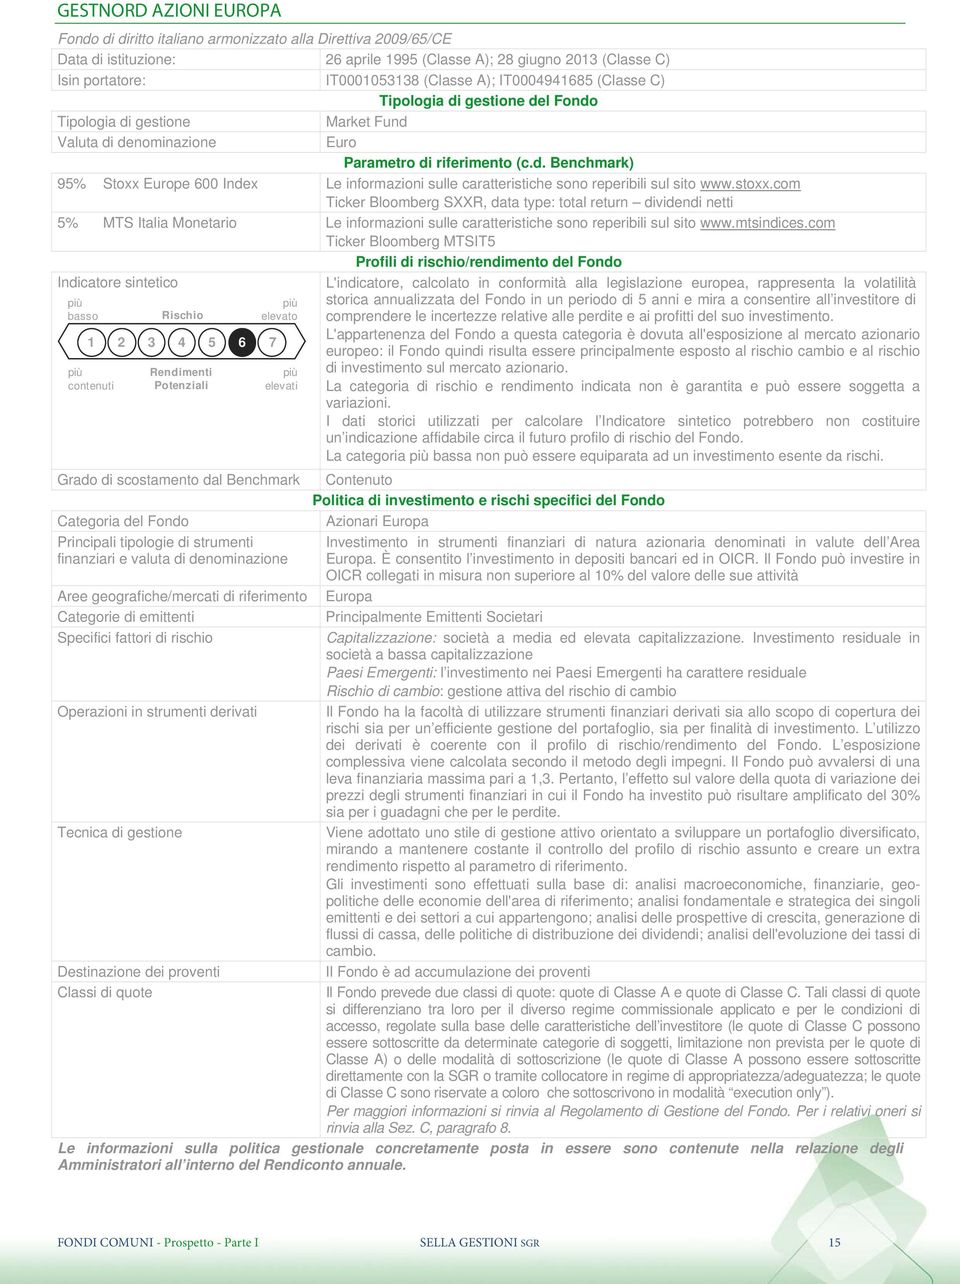 stoxx.com Ticker Bloomberg SXXR, data type: total return dividendi netti 5% MTS Italia Monetario Le informazioni sulle caratteristiche sono reperibili sul sito www.mtsindices.